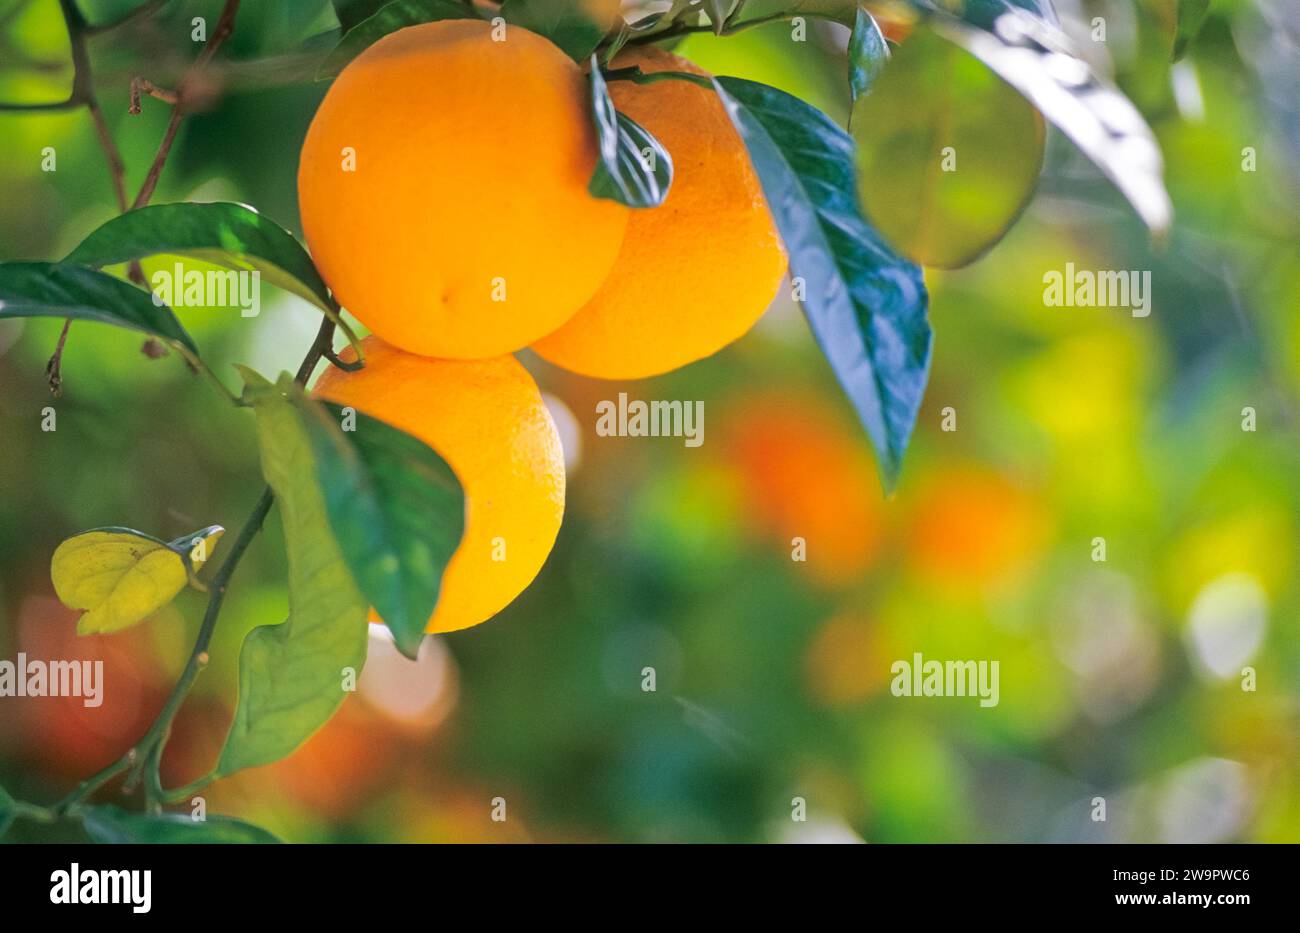 Nahaufnahme von drei Reifen Orangen auf einem Baum, Orangenbaum (Citrus x sinensis L.) mit grünen Blättern, verschwommenem Hintergrund, Soller Valley, Biniaraix Stockfoto